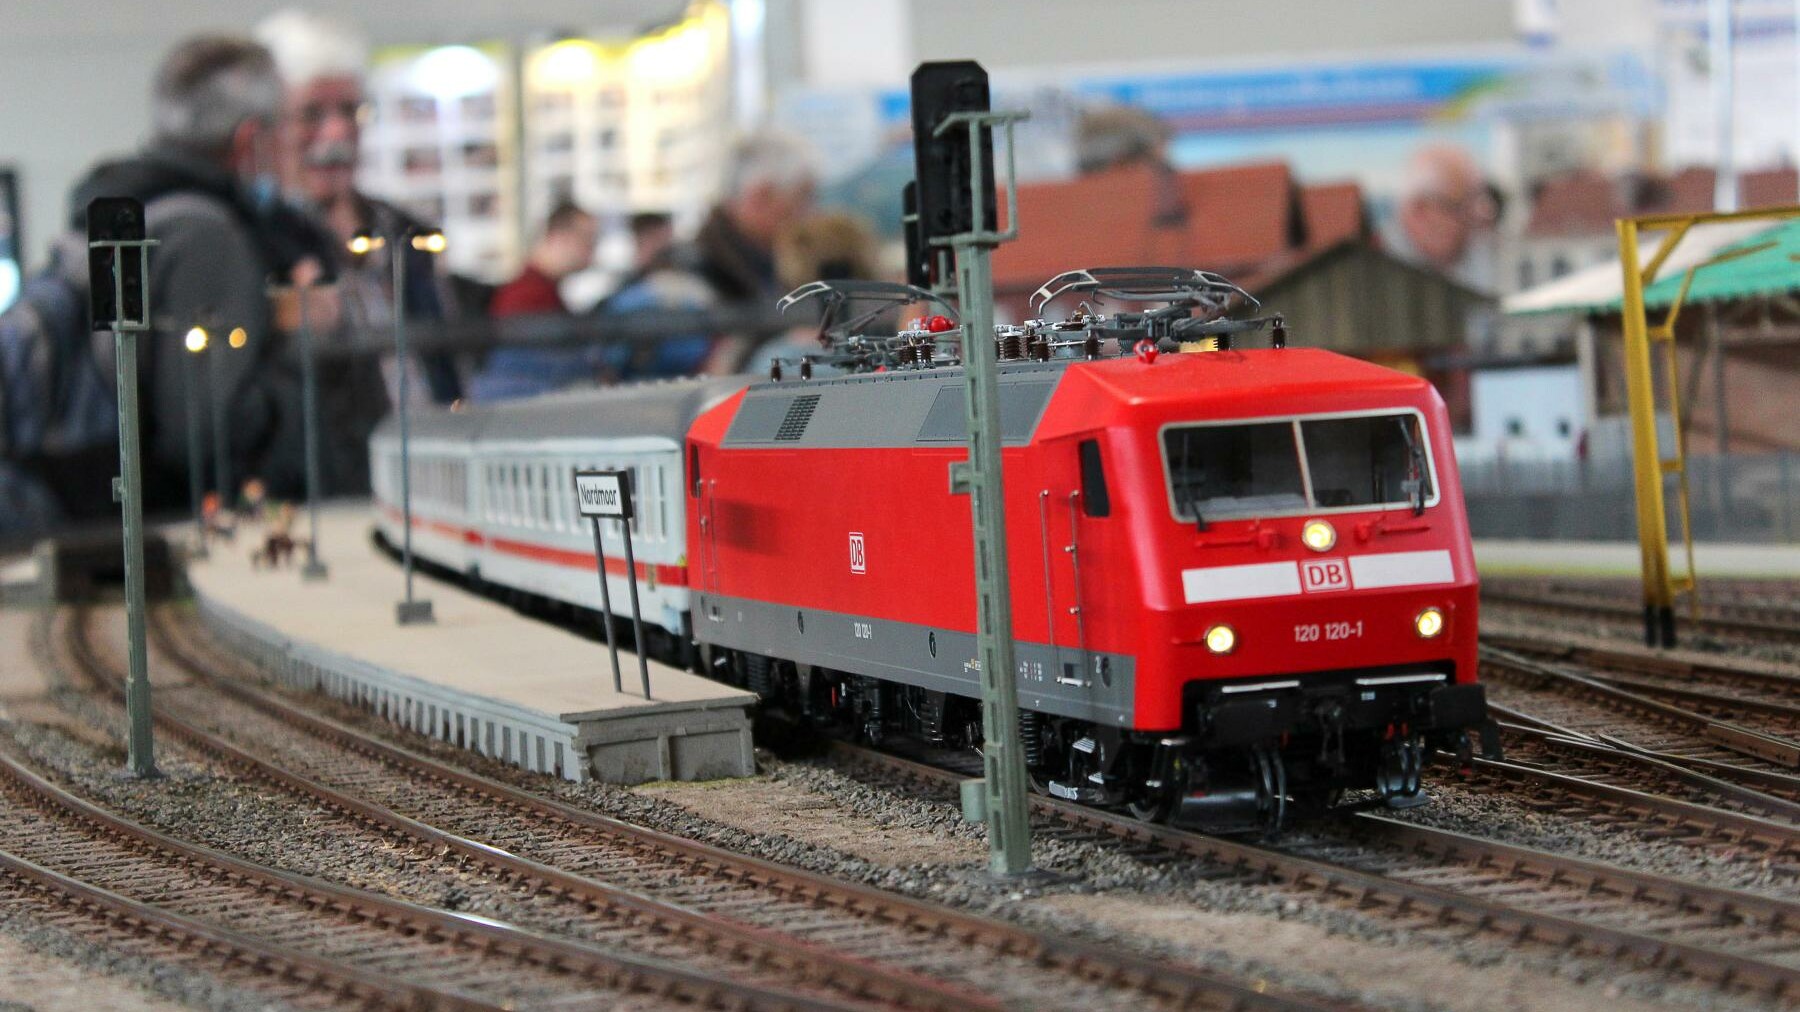 Faszination Modellbau Internationale Leitmesse für Modellbahnen und Modellbau Eisenbahn7 uai